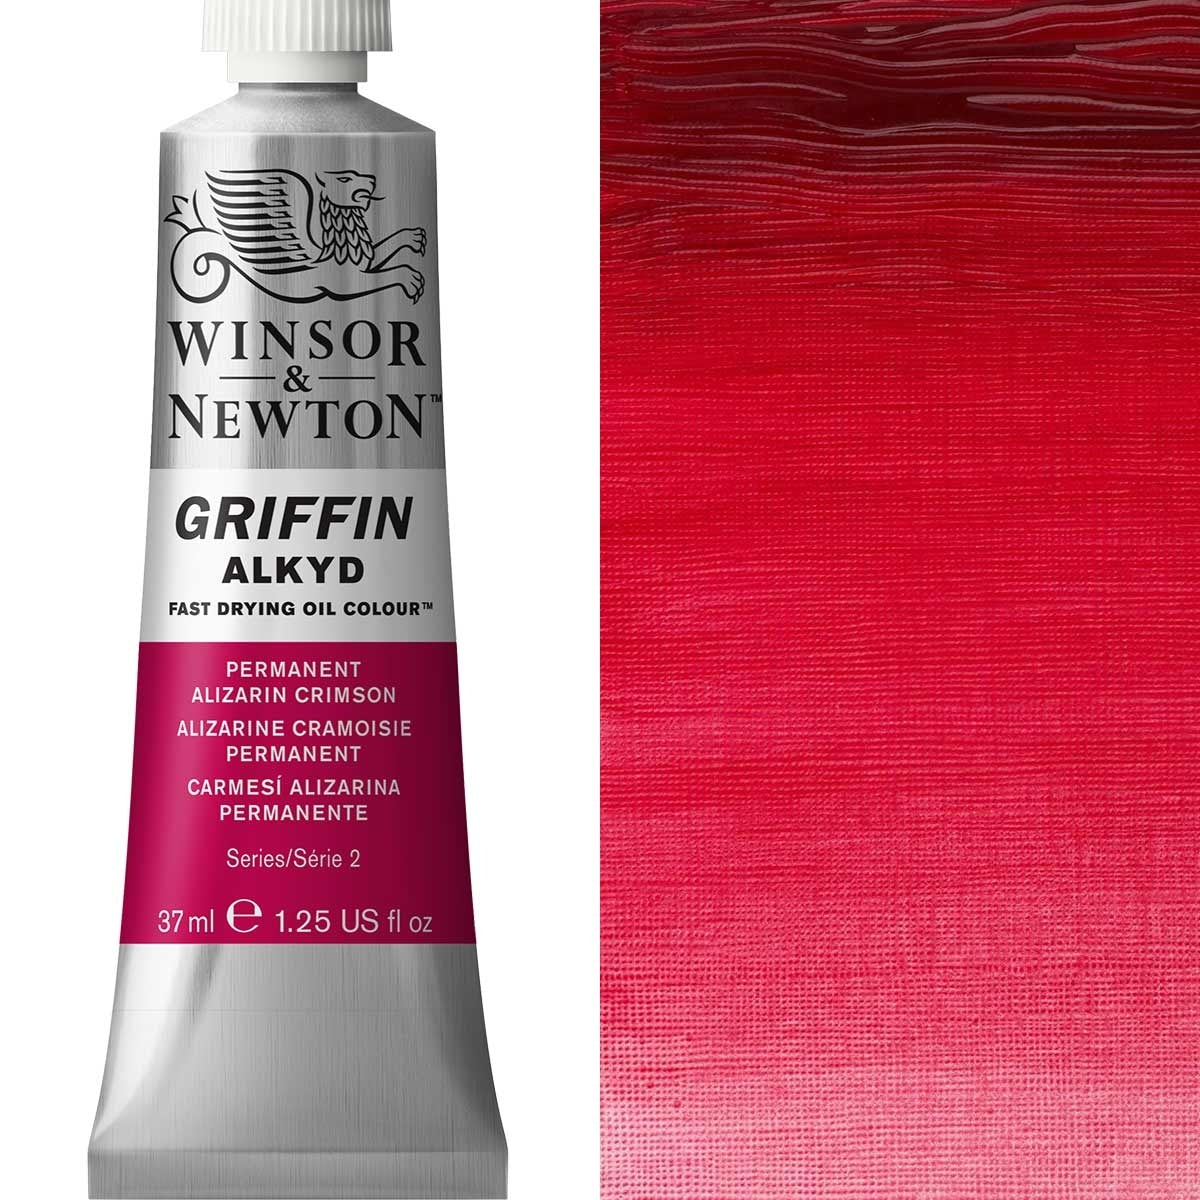 Winsor and Newton - Griffin ALKYD Oil Colour - 37ml - Permanent Alizarin Crimson